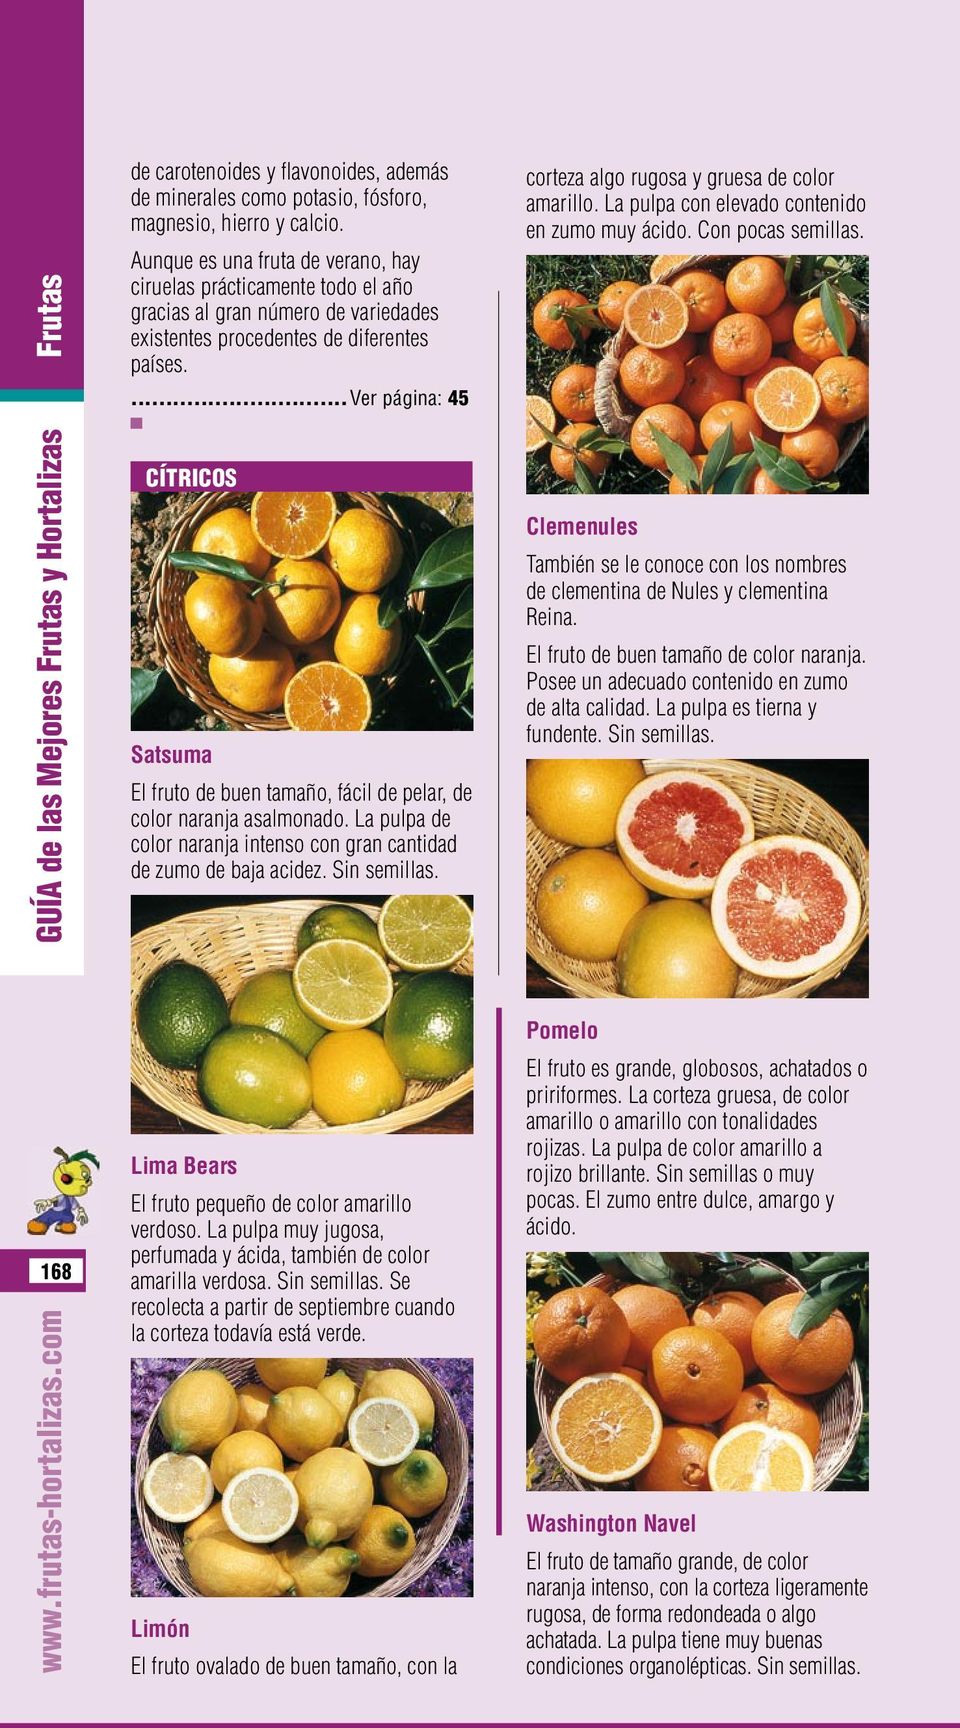 ...ver página: 45 CÍTRICOS Satsuma El fruto de buen tamaño, fácil de pelar, de color naranja asalmonado. La pulpa de color naranja intenso con gran cantidad de zumo de baja acidez. Sin semillas.